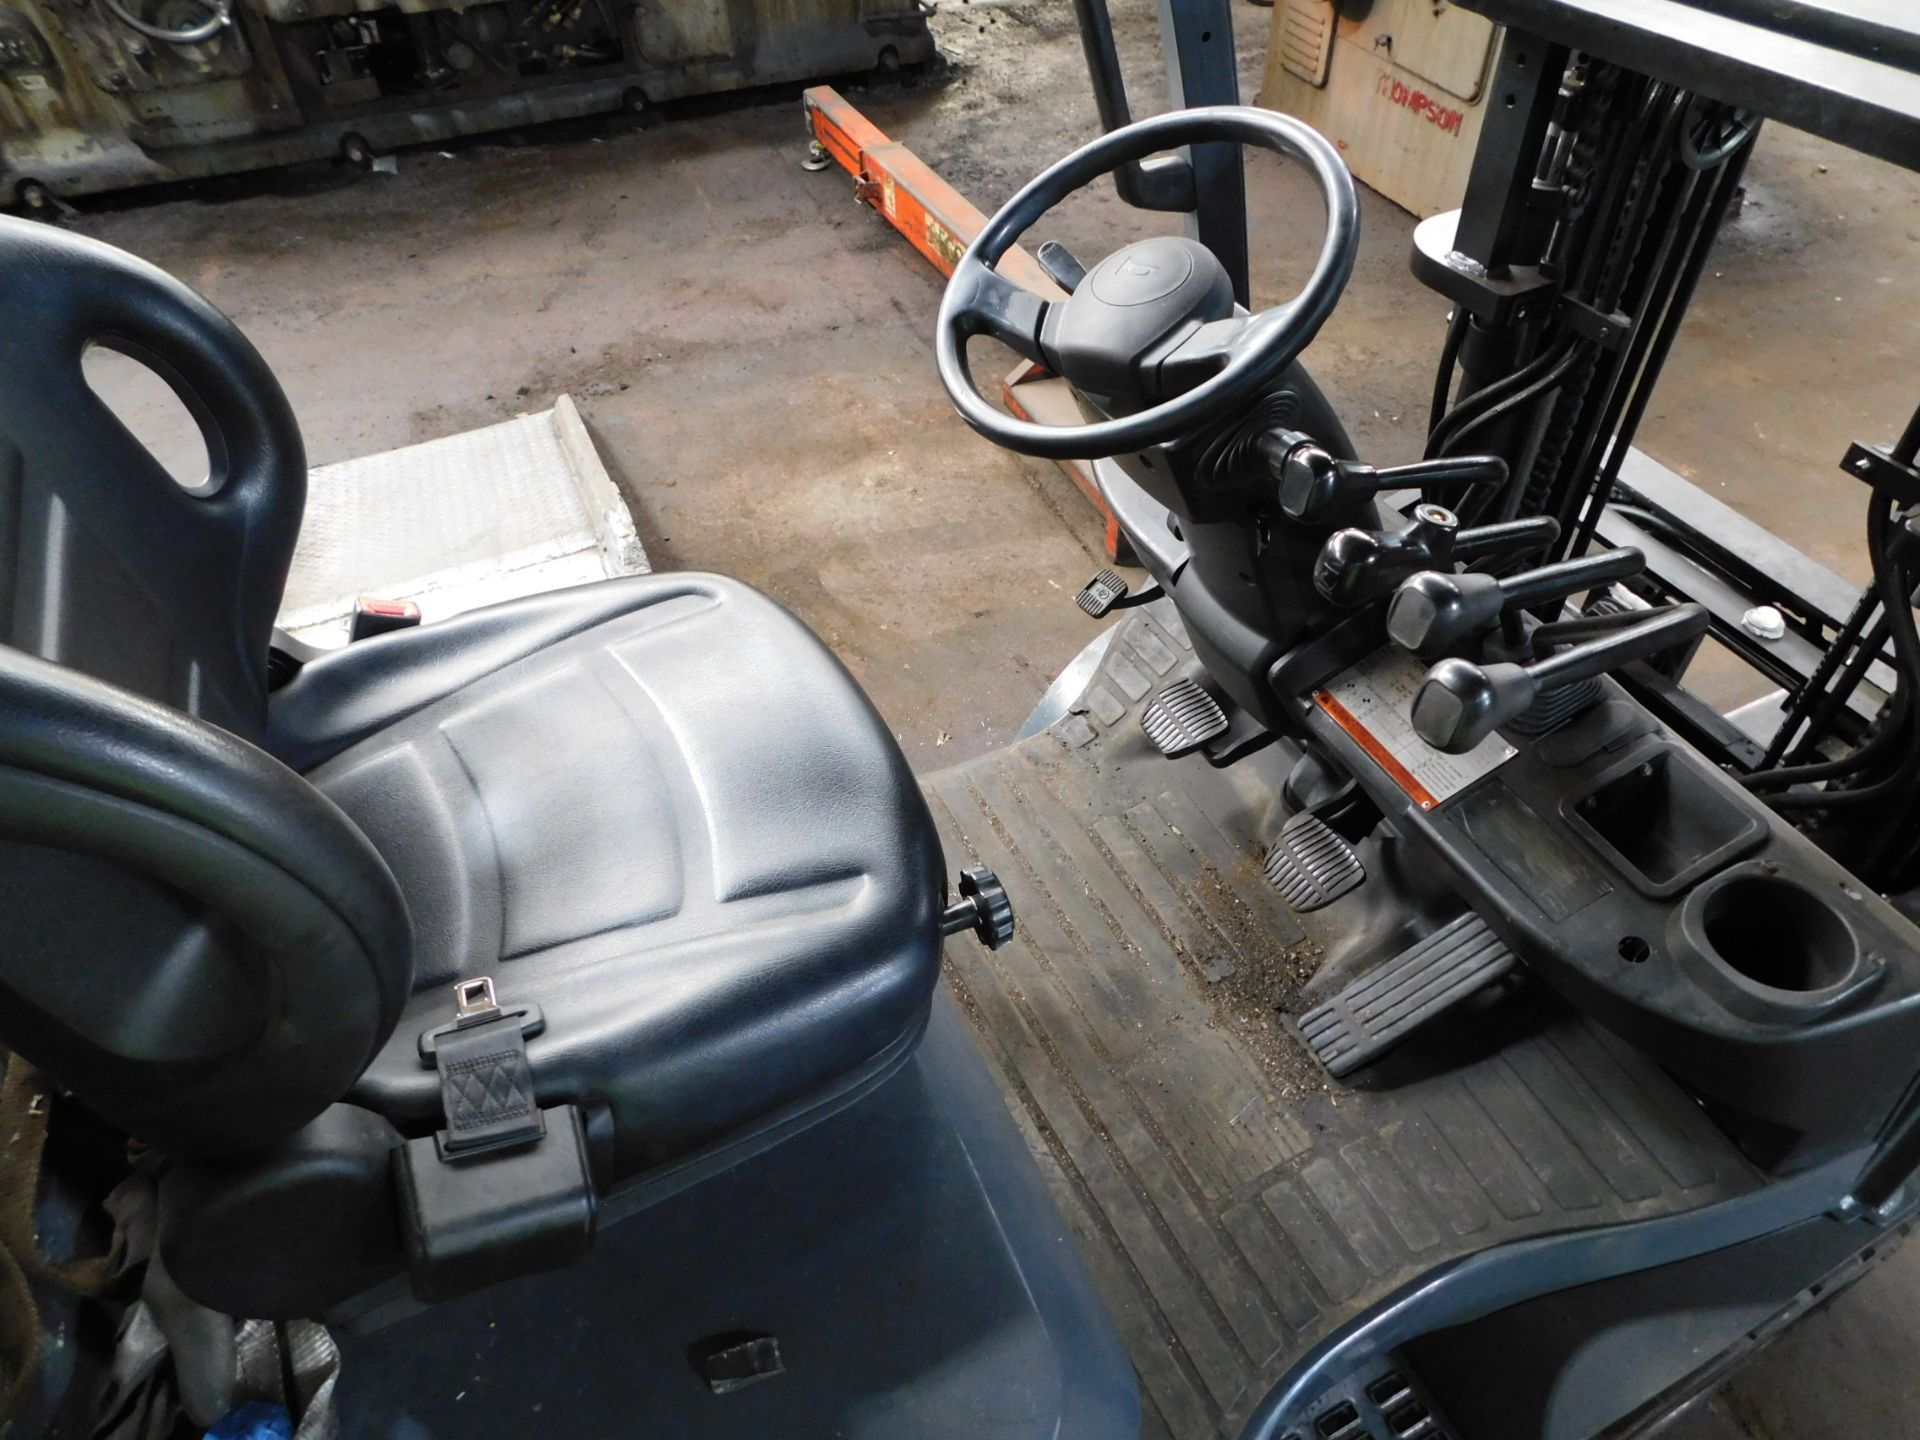 Toyota Model 8FGCU20 Forklift, s/n 30388, 4,000 Lb. Capacity, LP, Hard Tire, Short Mast, Side Shift - Image 9 of 16